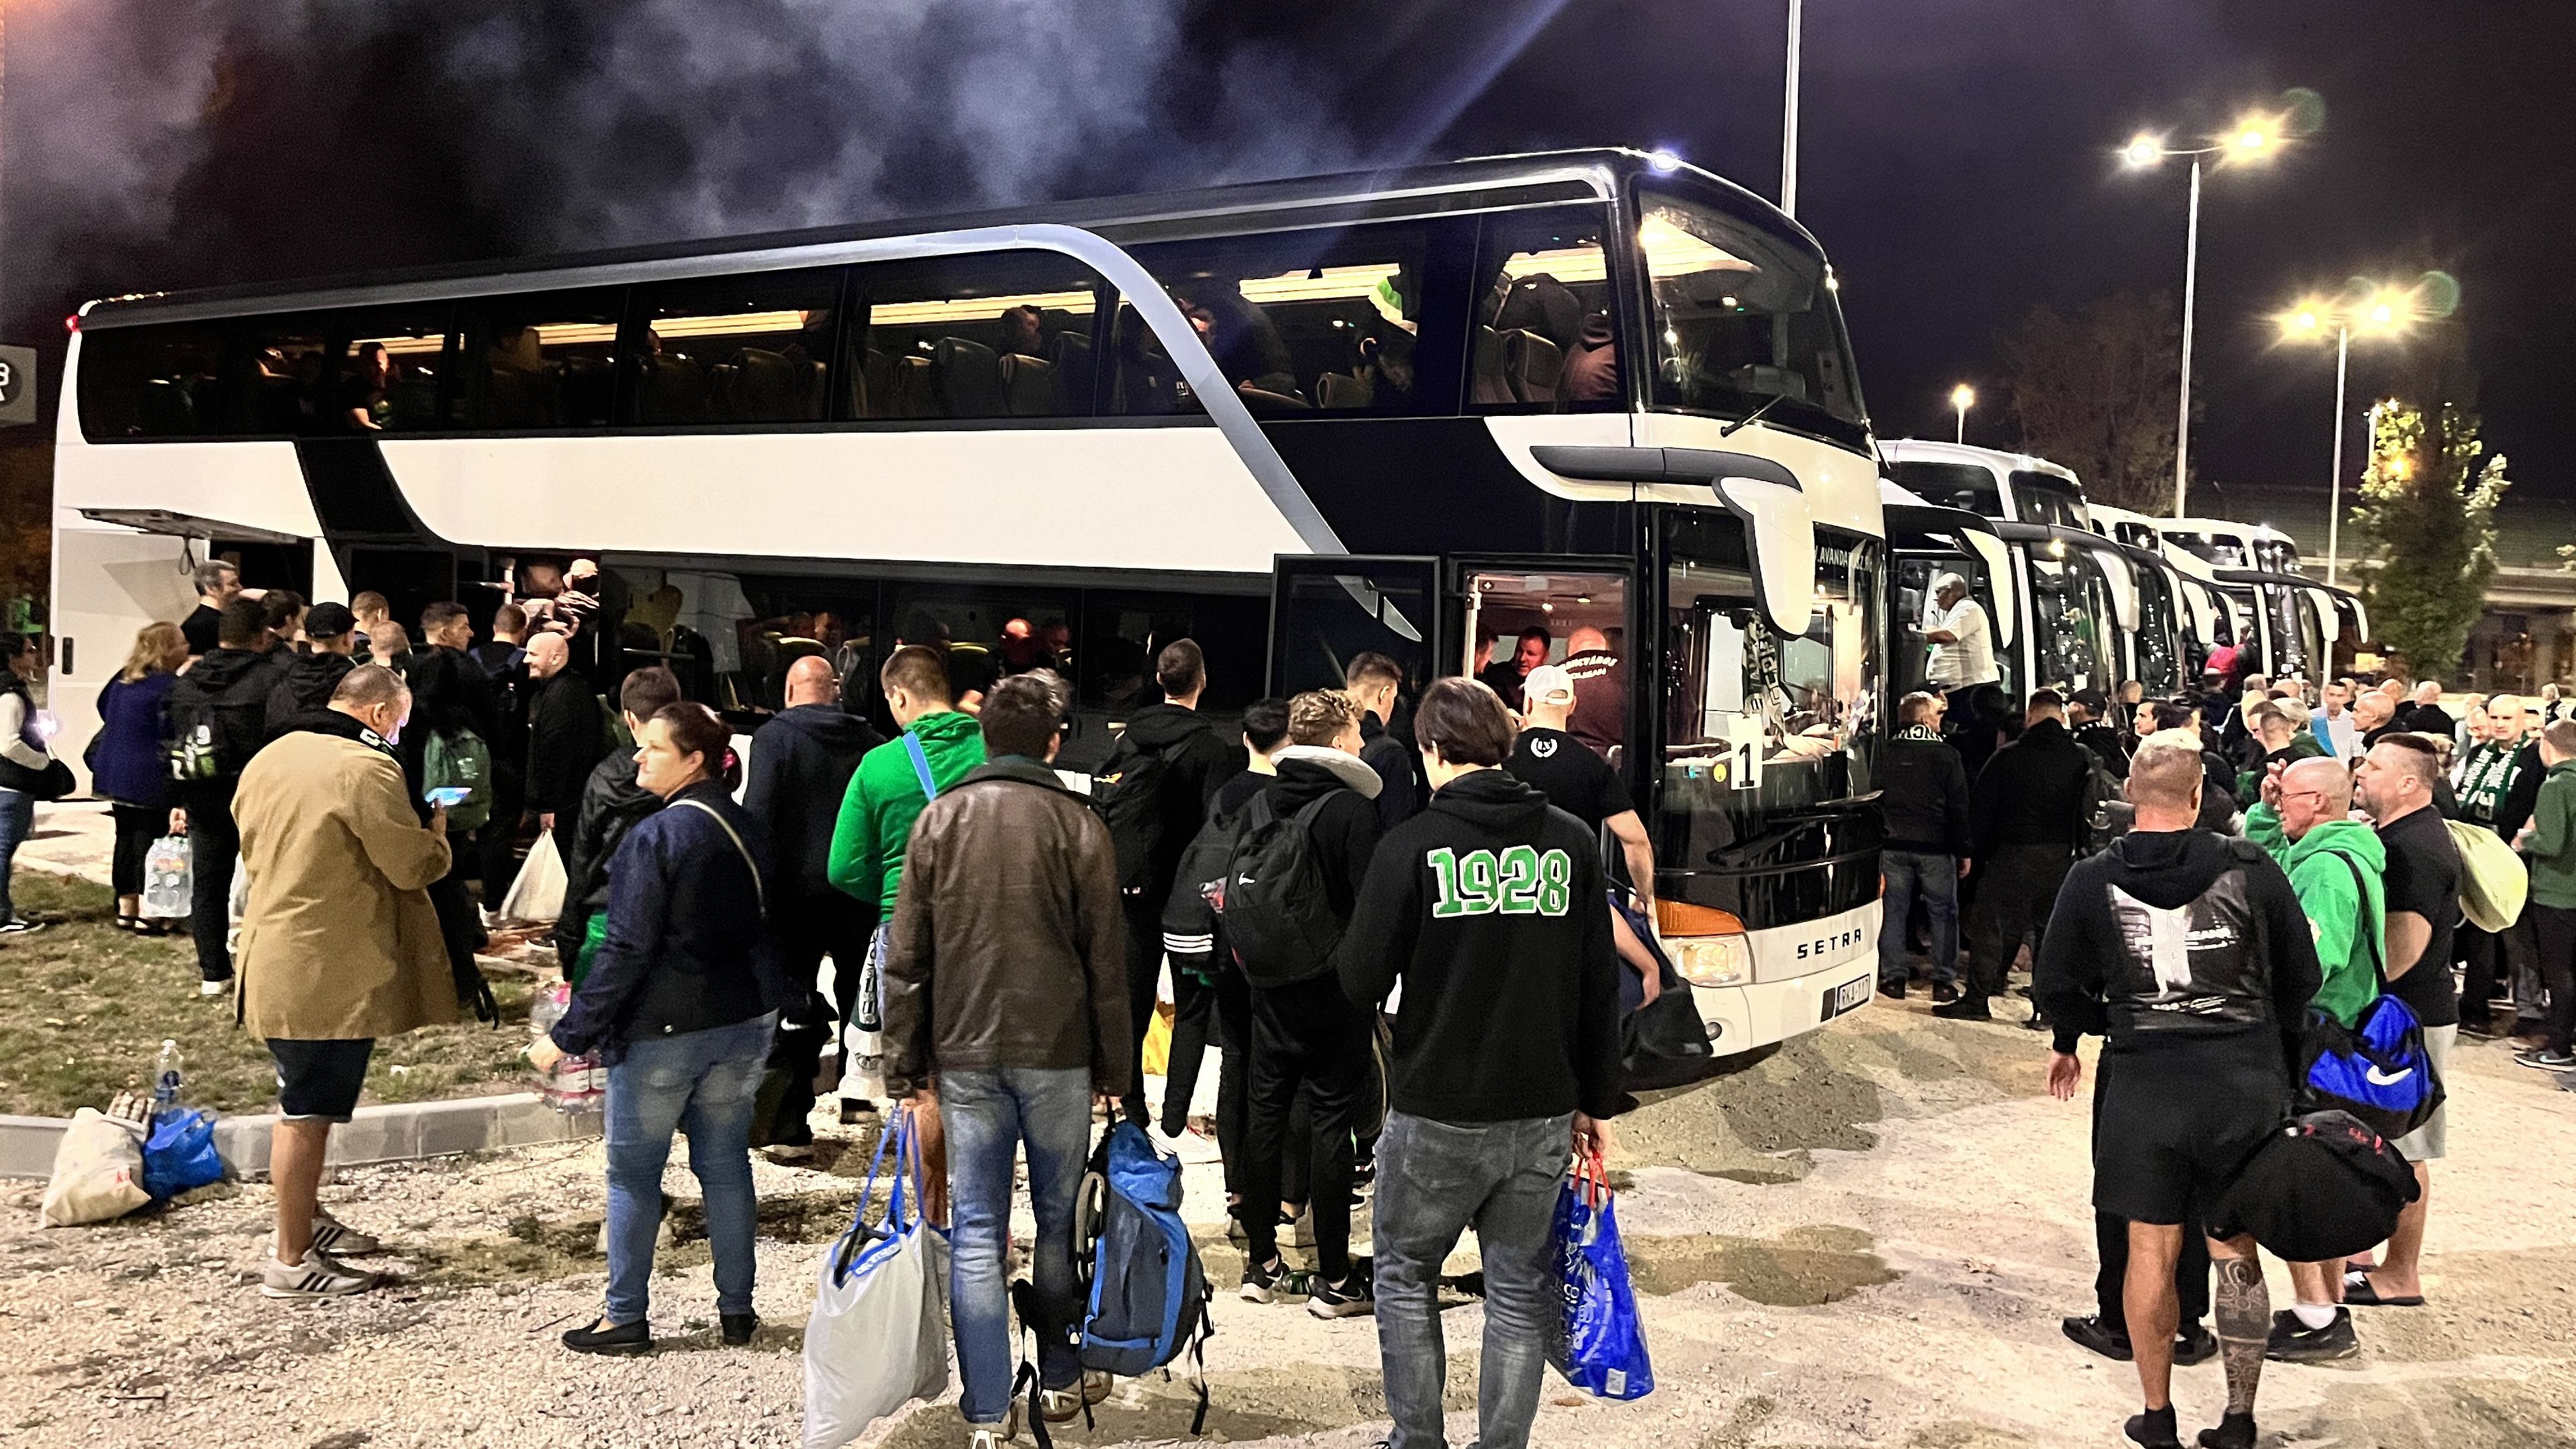 Buszokkal indulnak Firenzébe a zöld-fehér drukkerek